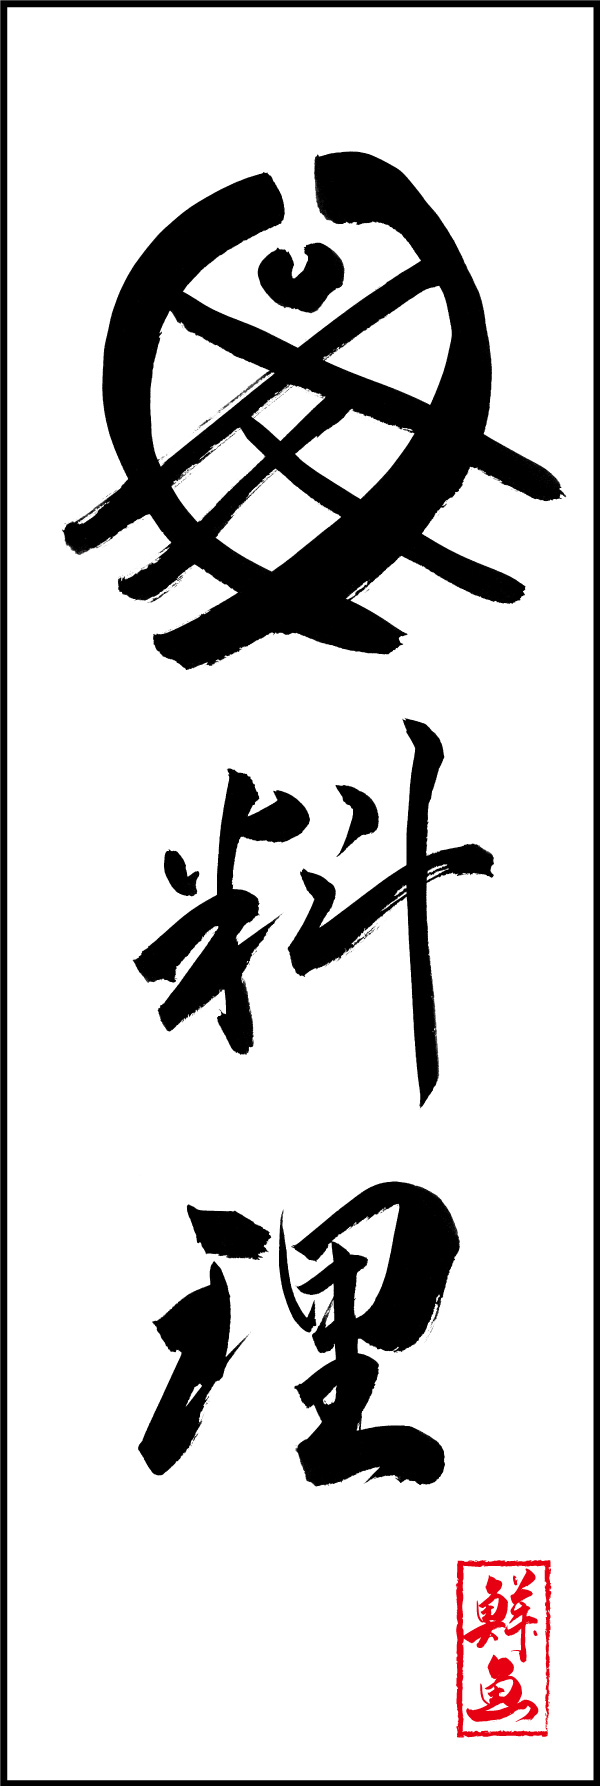 魚料理 156_01 「魚料理」の幟です。江戸文字職人 加藤木大介氏による、手書きの筆文字です。完全書き下ろし、唯一無二の幟は当店だけのオリジナル商品です。（Y.M）